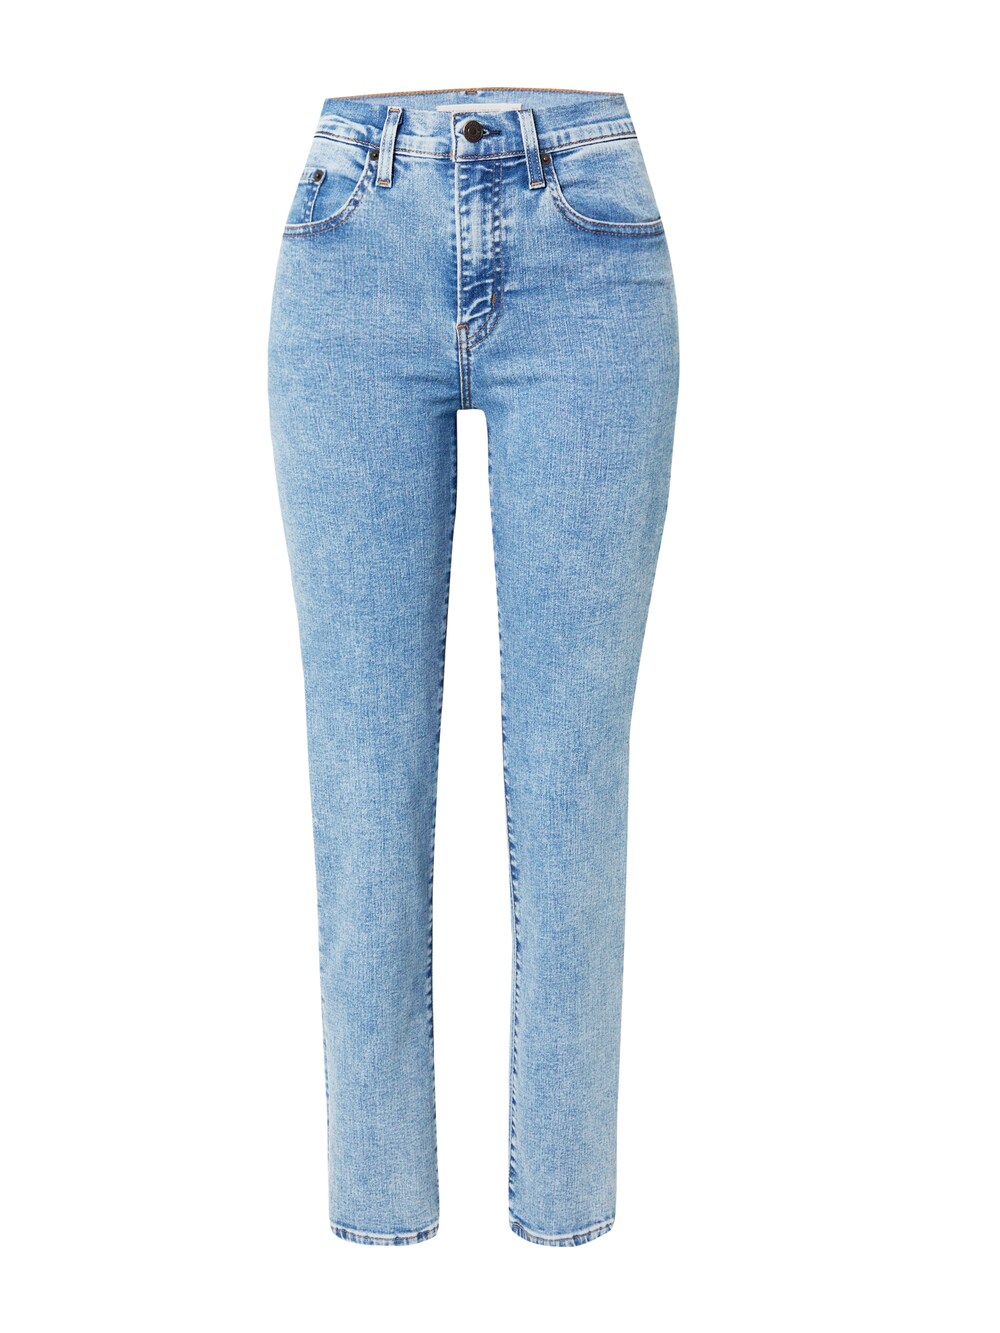 Обычные джинсы LEVIS 724, синий